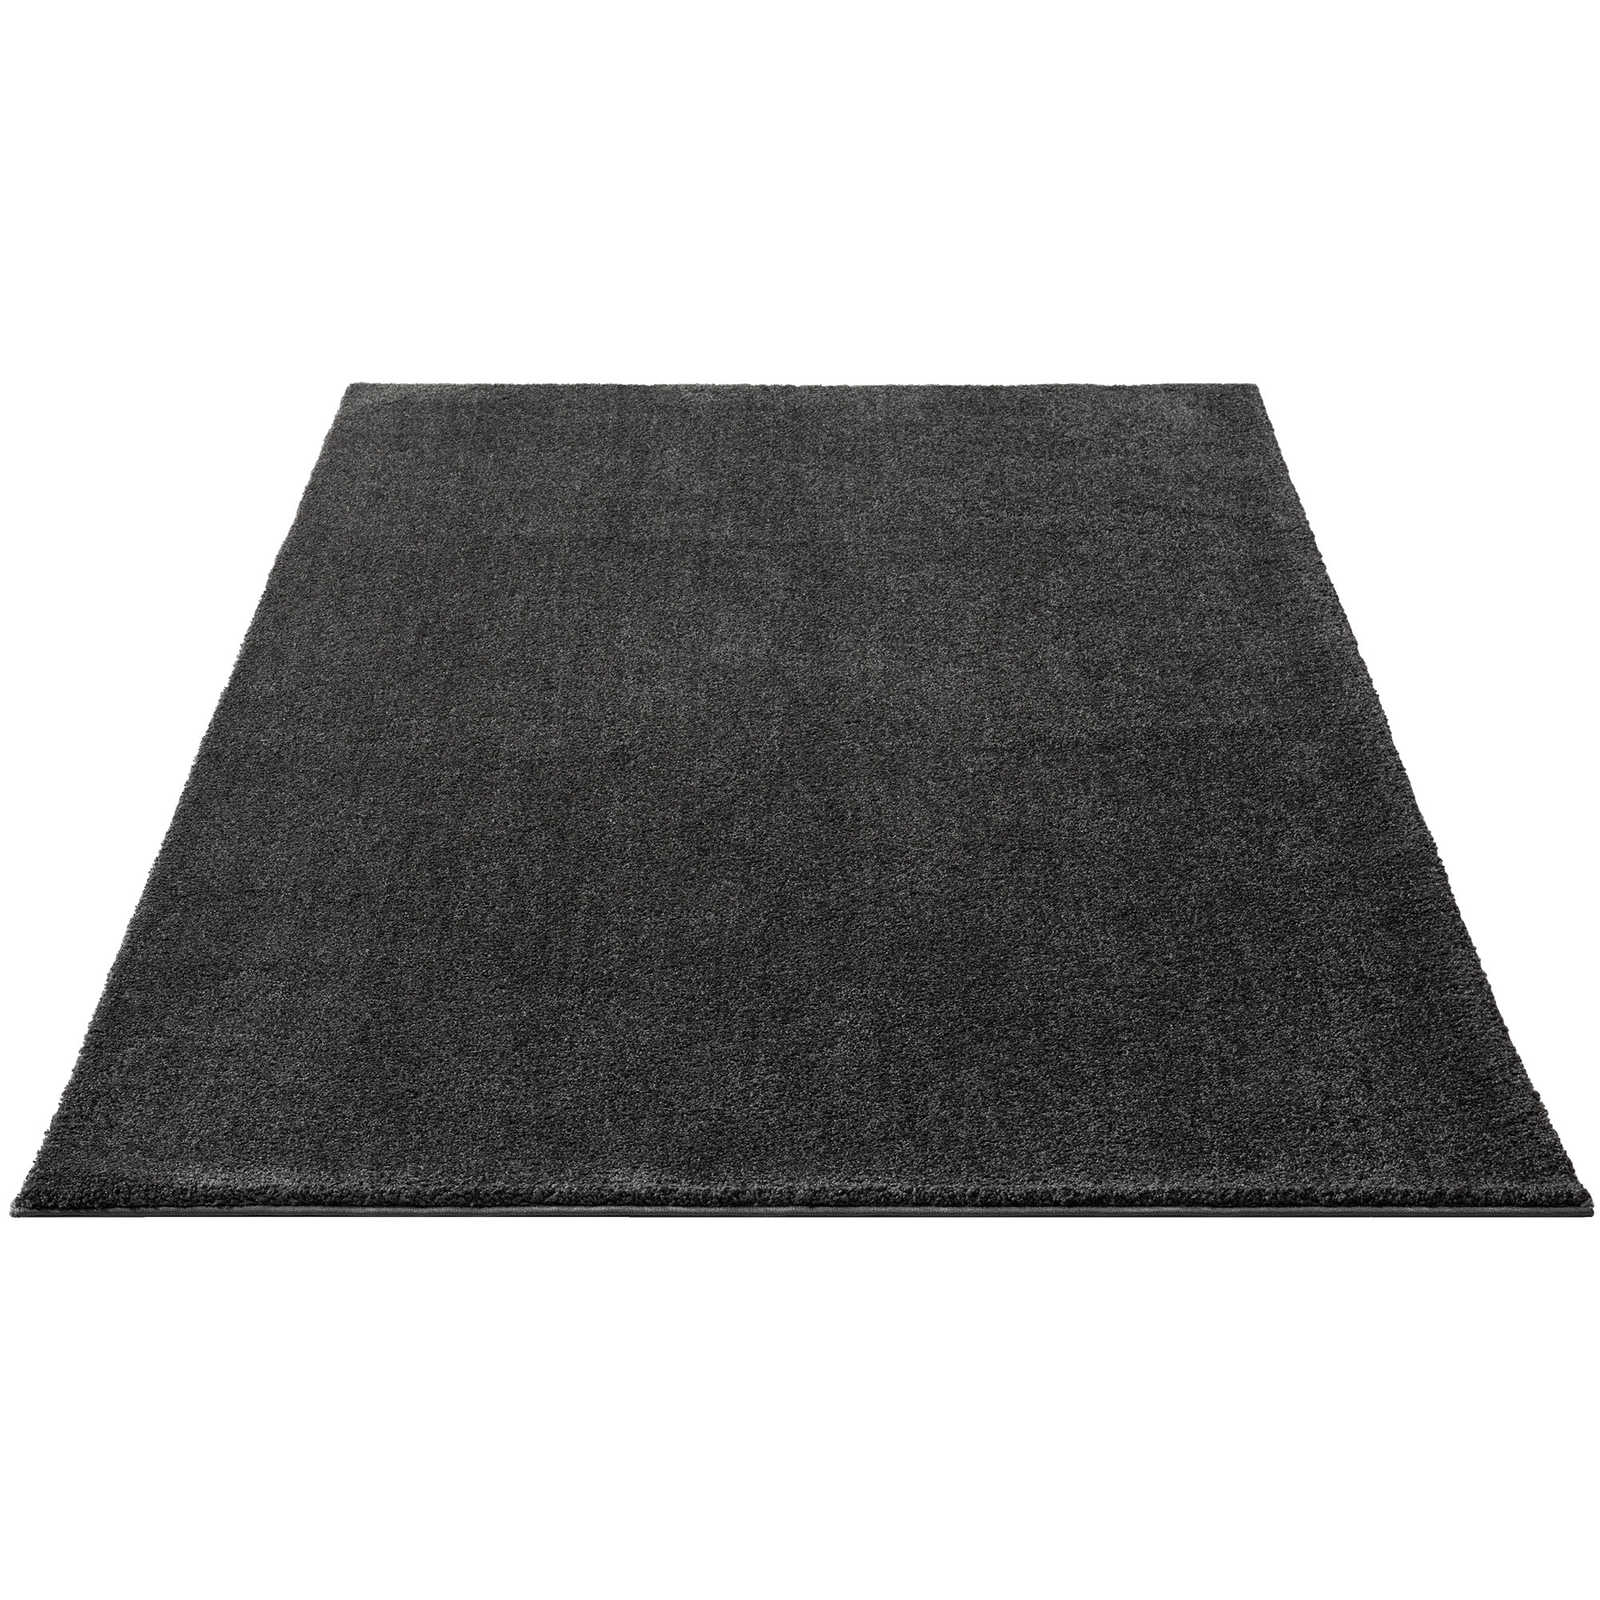 Soft short pile carpet in anthracite - 290 x 200 cm
